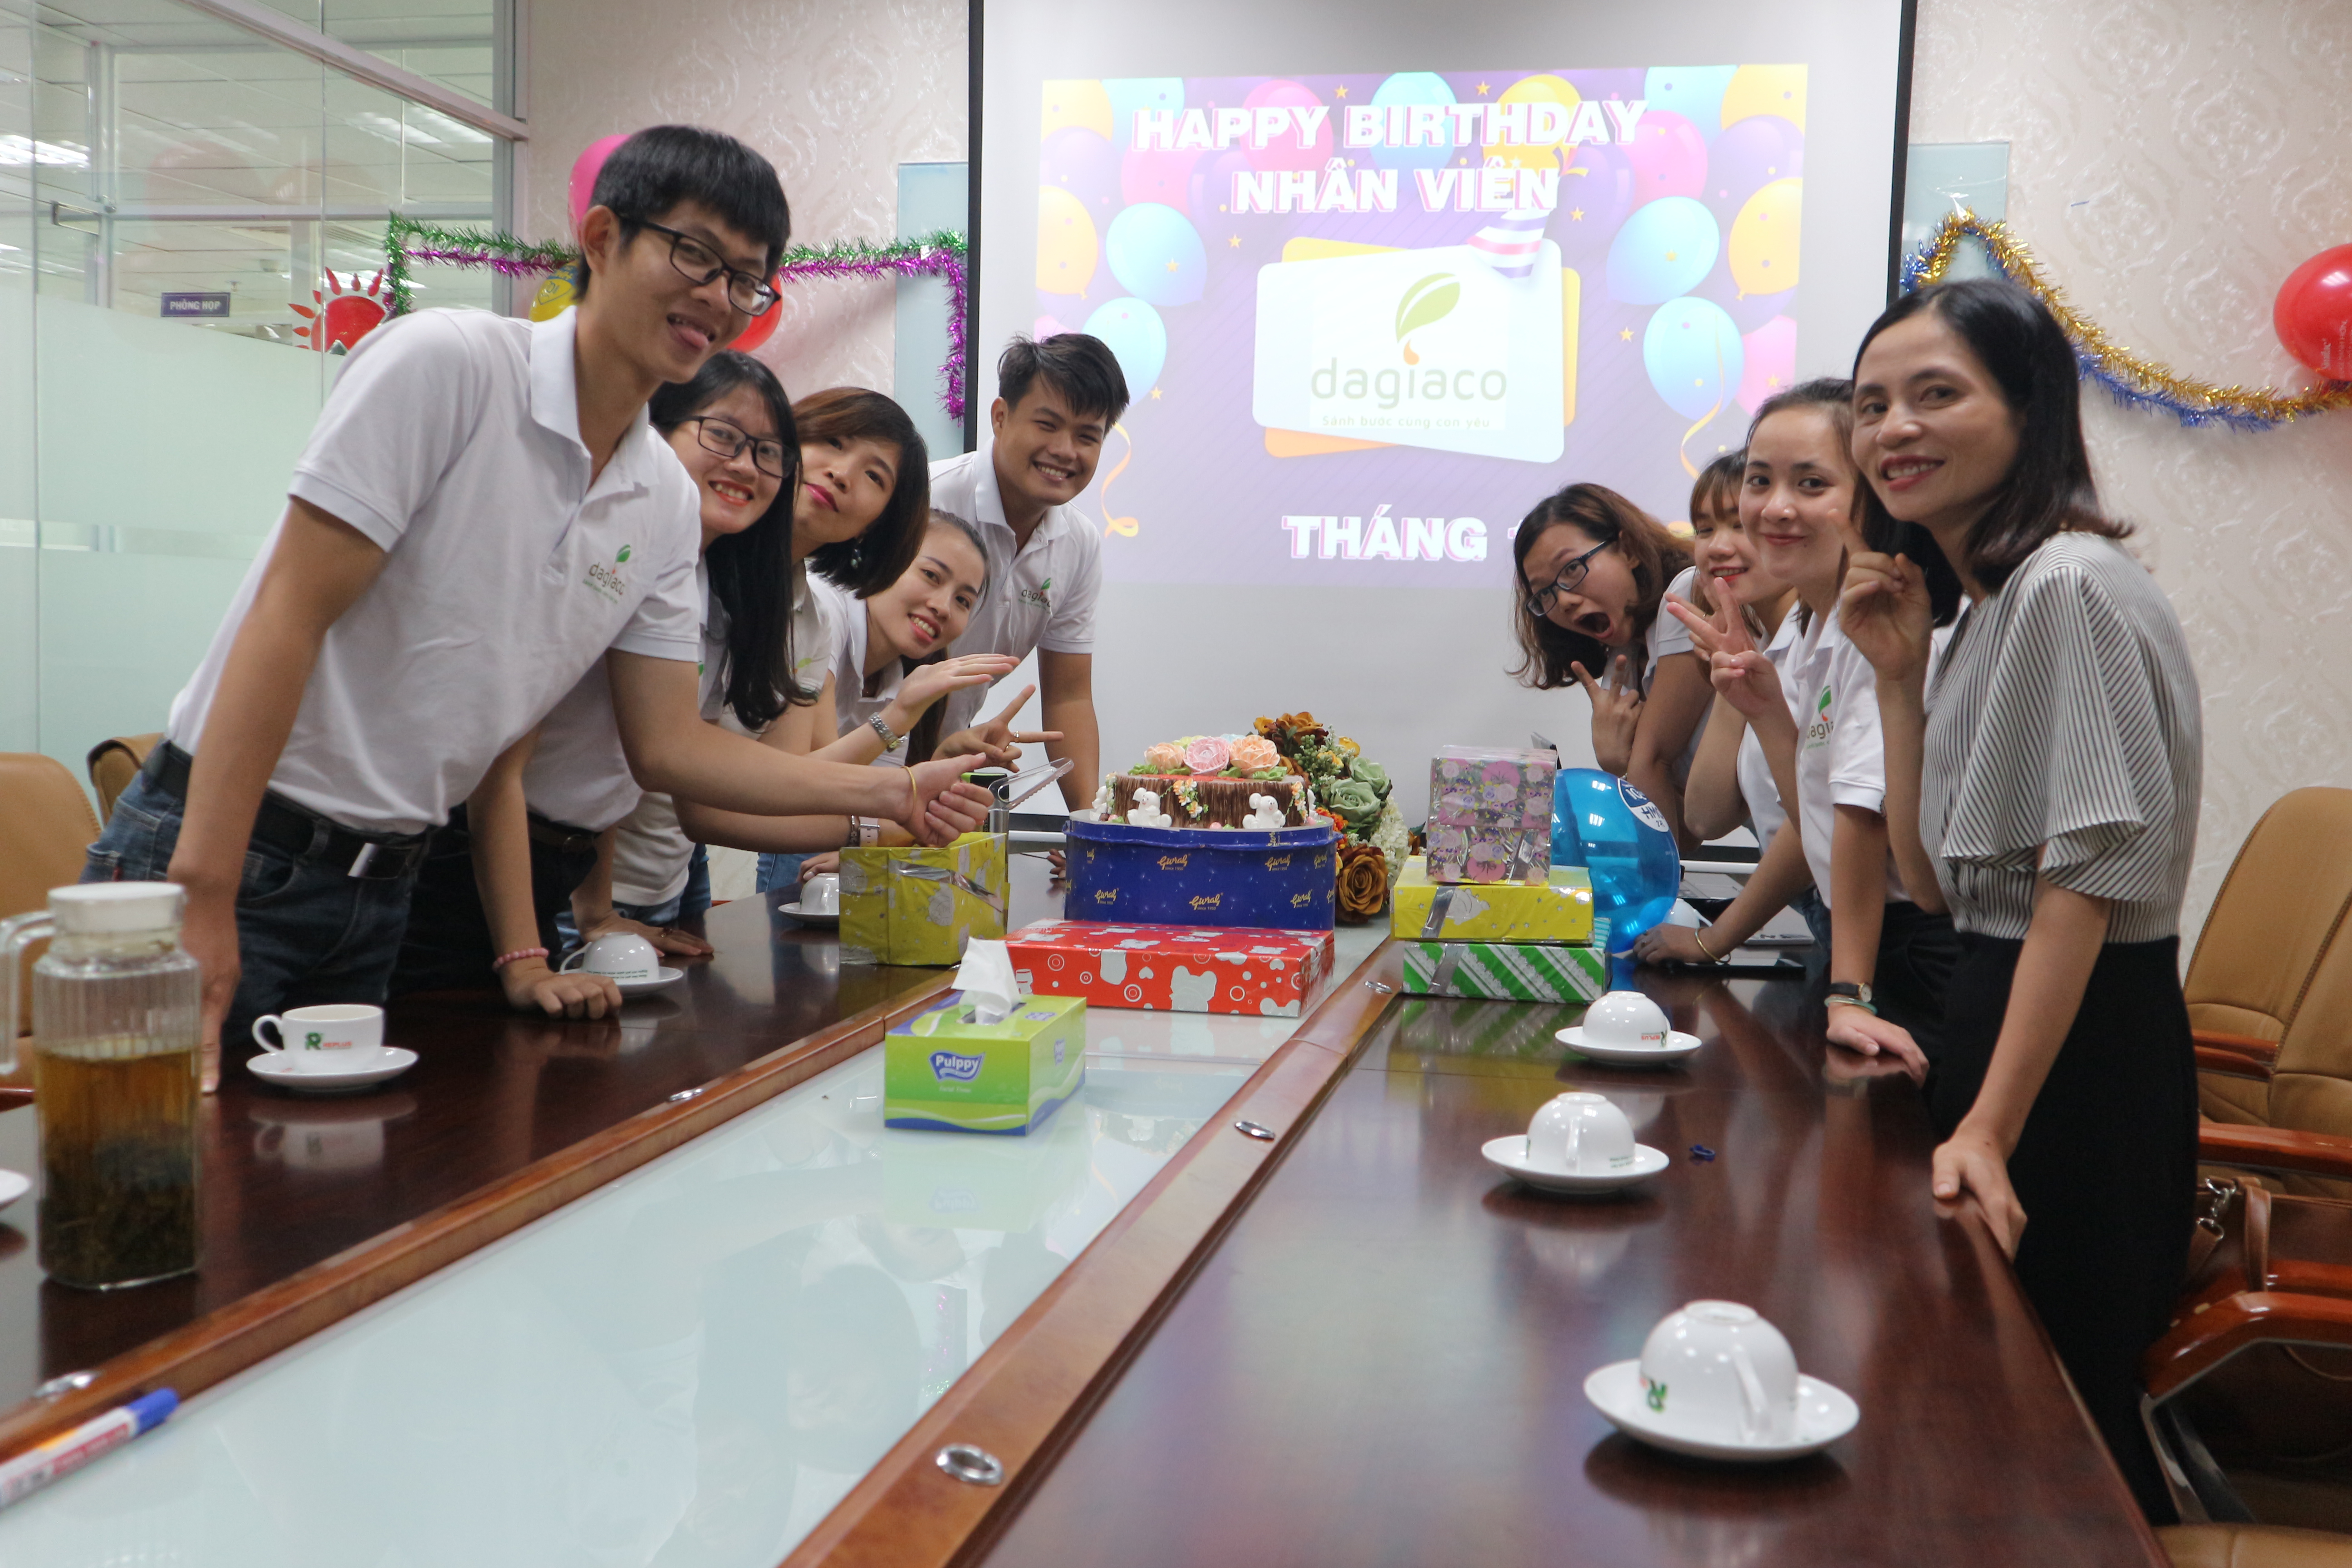 Công ty Dagiaco tổ chức sinh nhật cho nhân viên có ngày sinh trong tháng 6